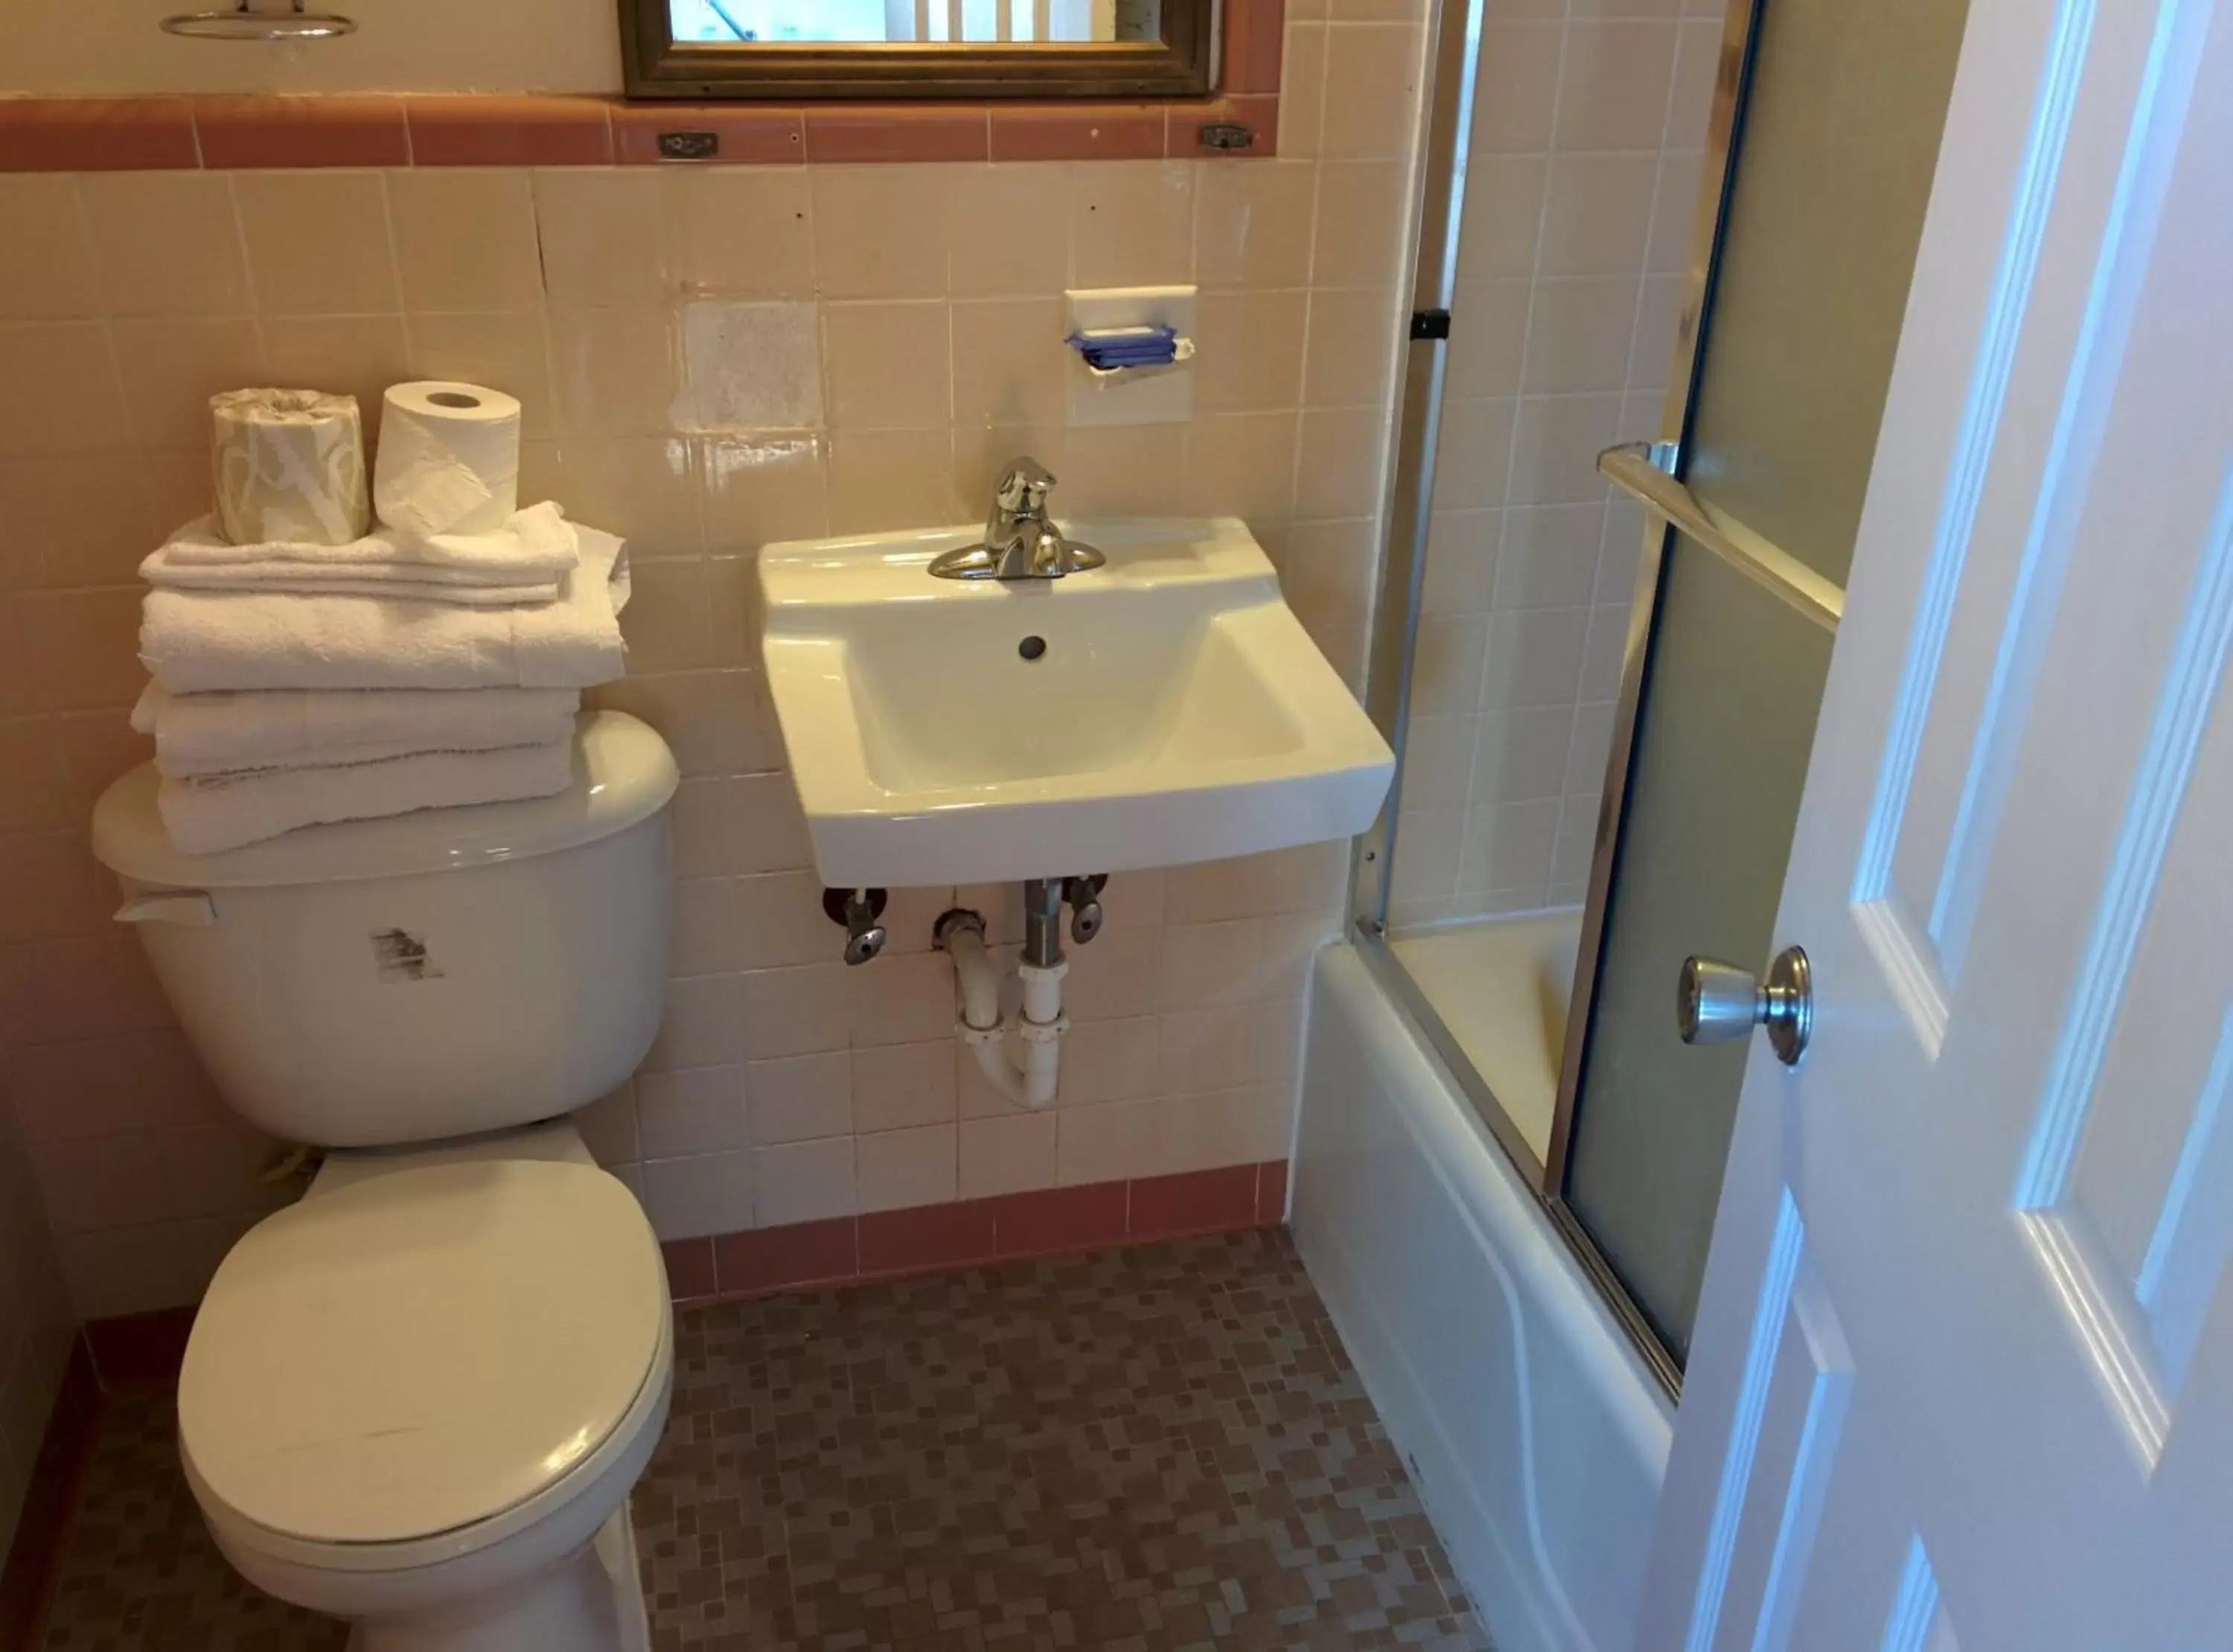 Bathroom in Wayfarer Motel